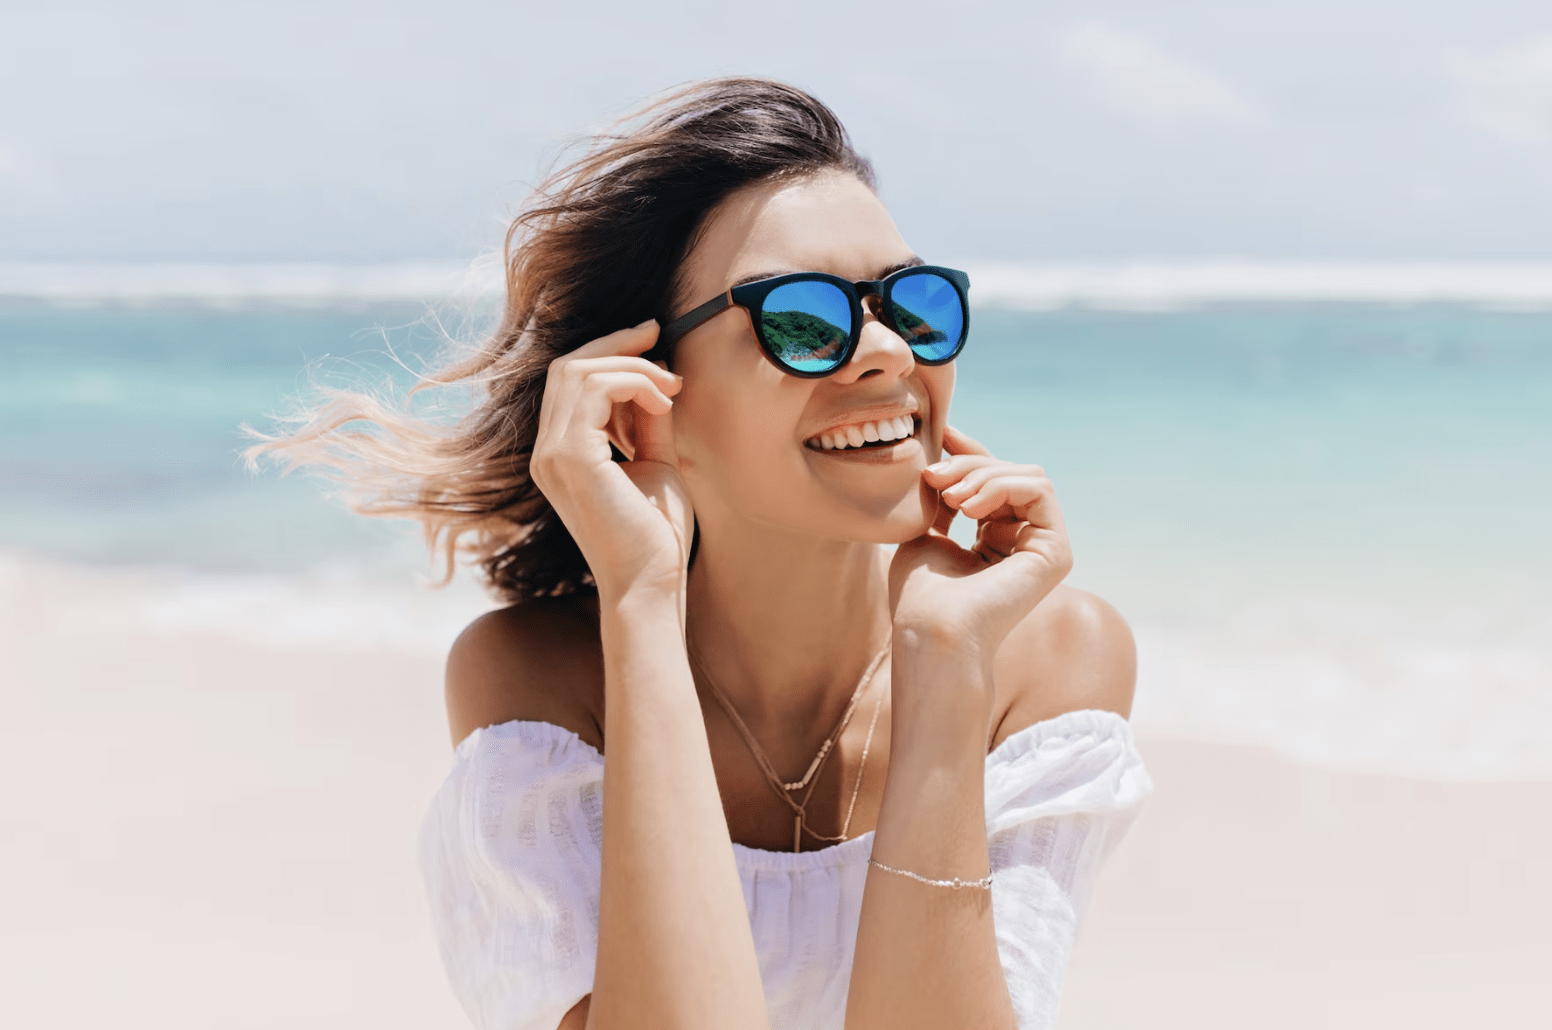 Los 5 accesorios imprescindibles para completar tu look de verano